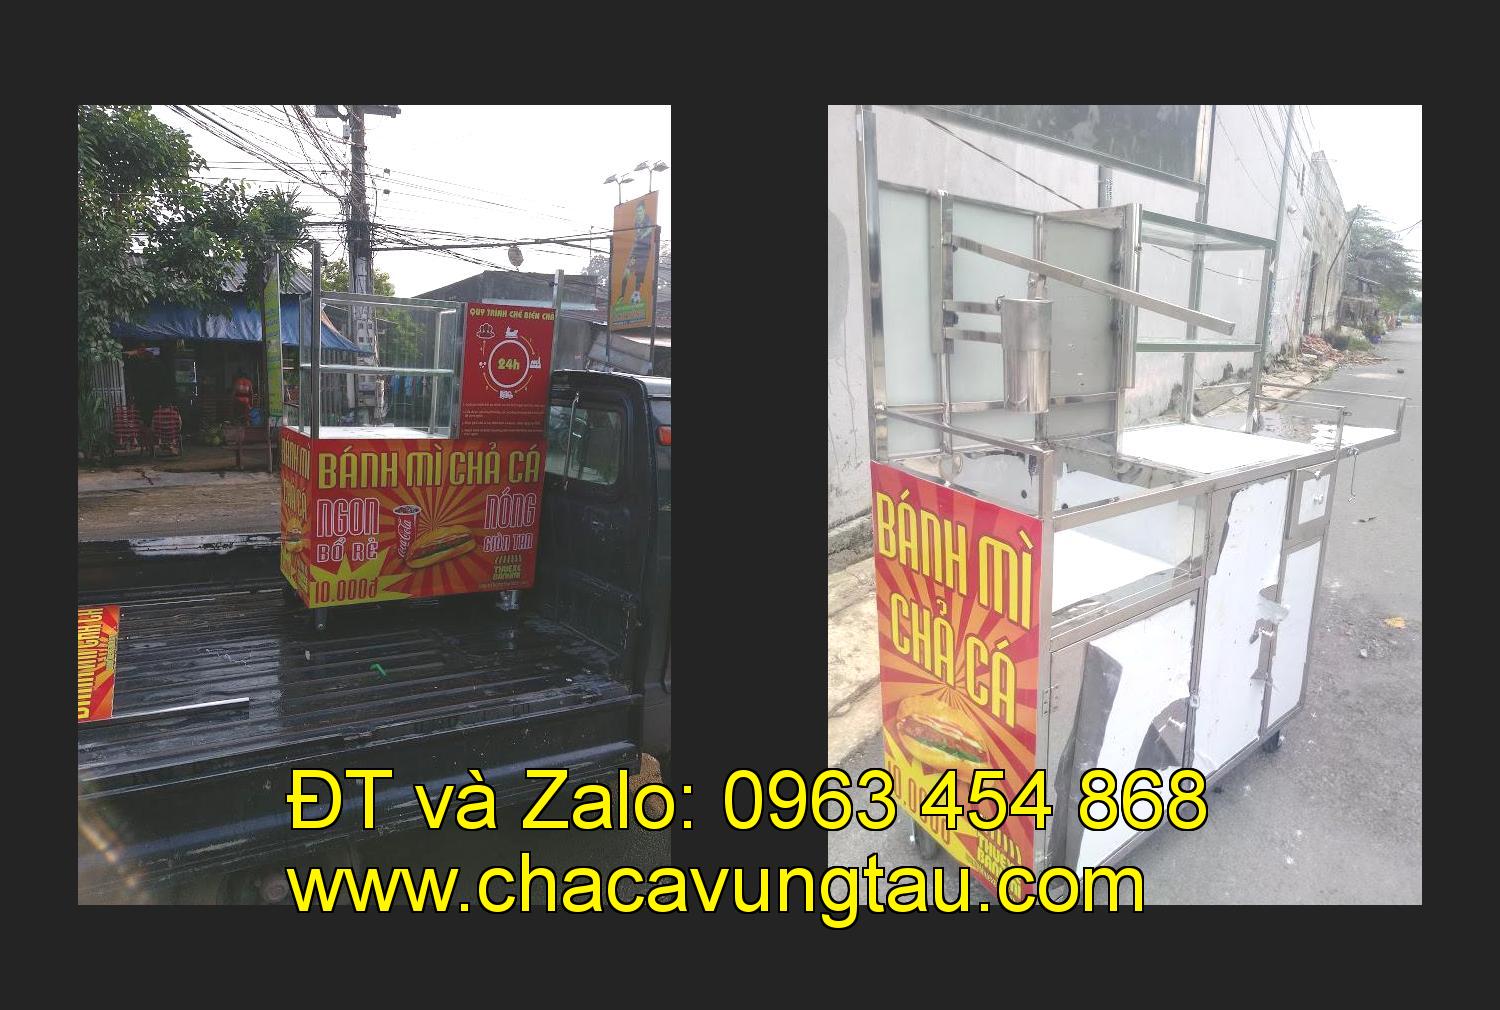 Bán xe bánh mì chả cá tại tỉnh Phú Yên